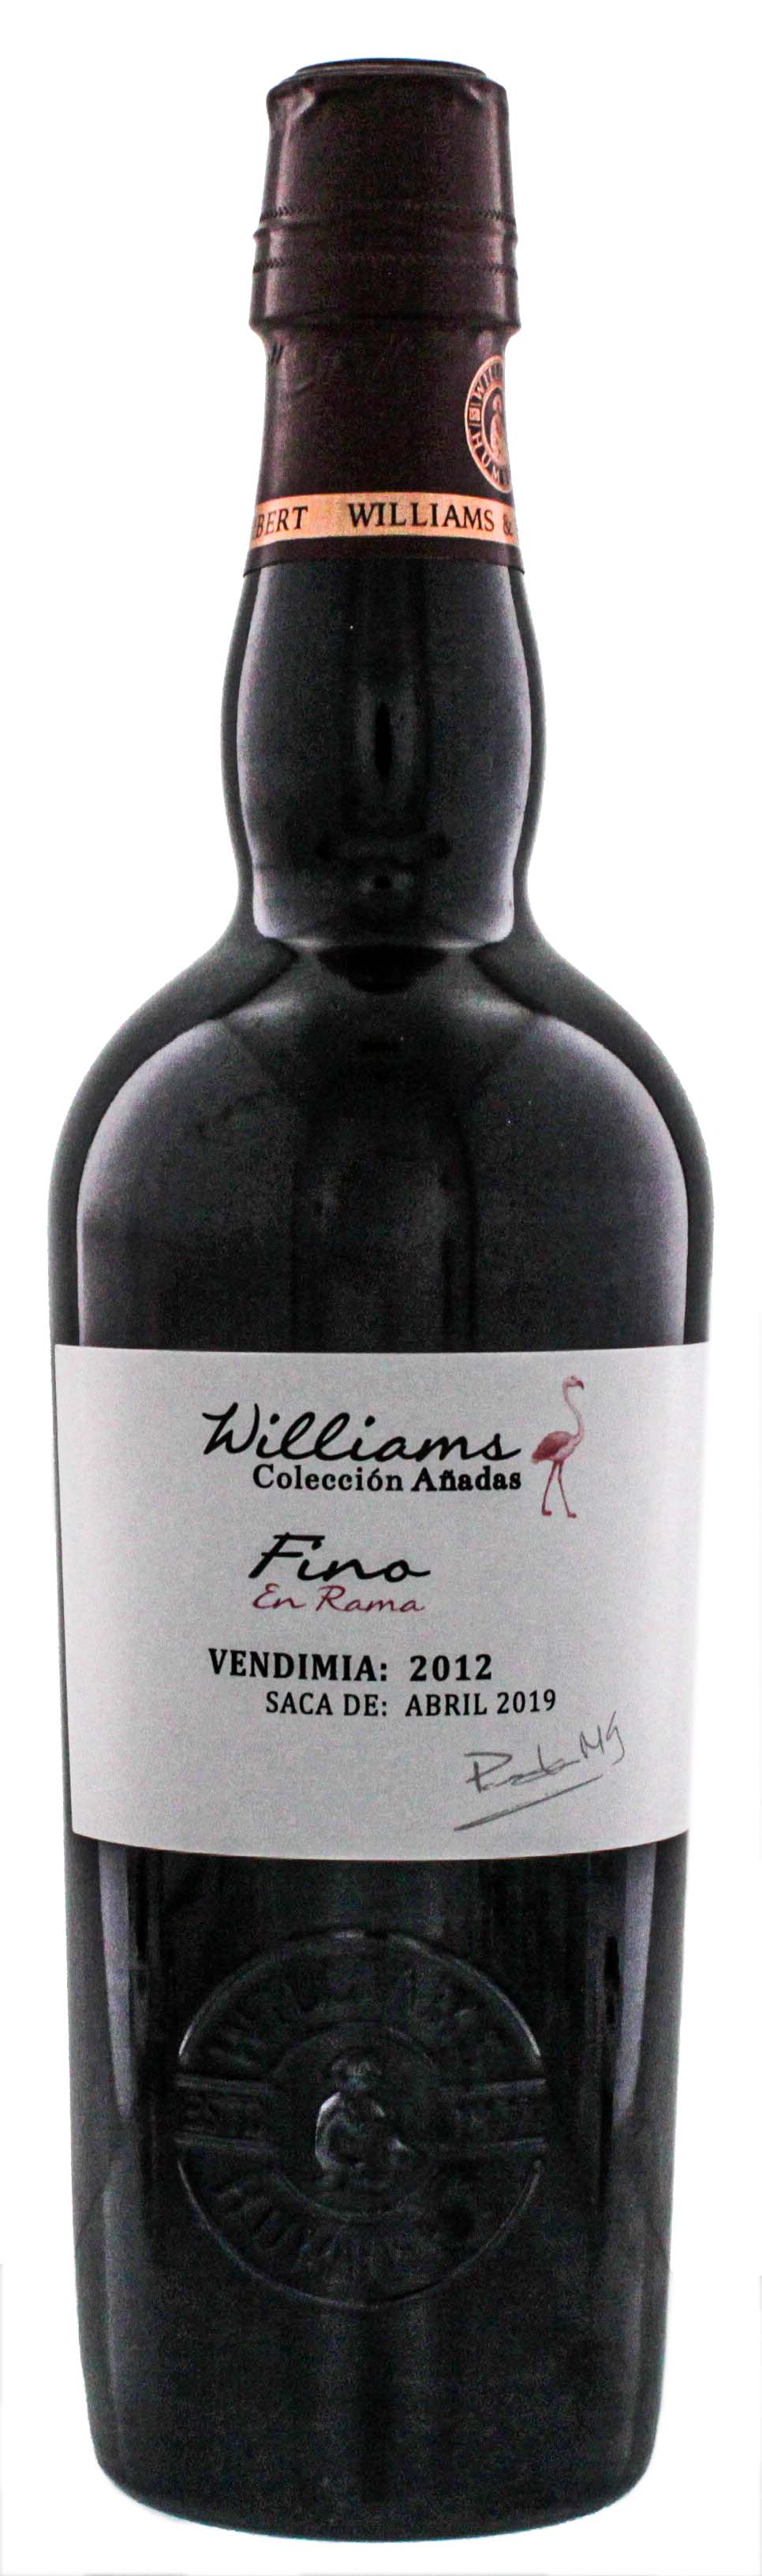 Williams Coleccion Anadas Fino En Rama 2012 Sherry 0,5L